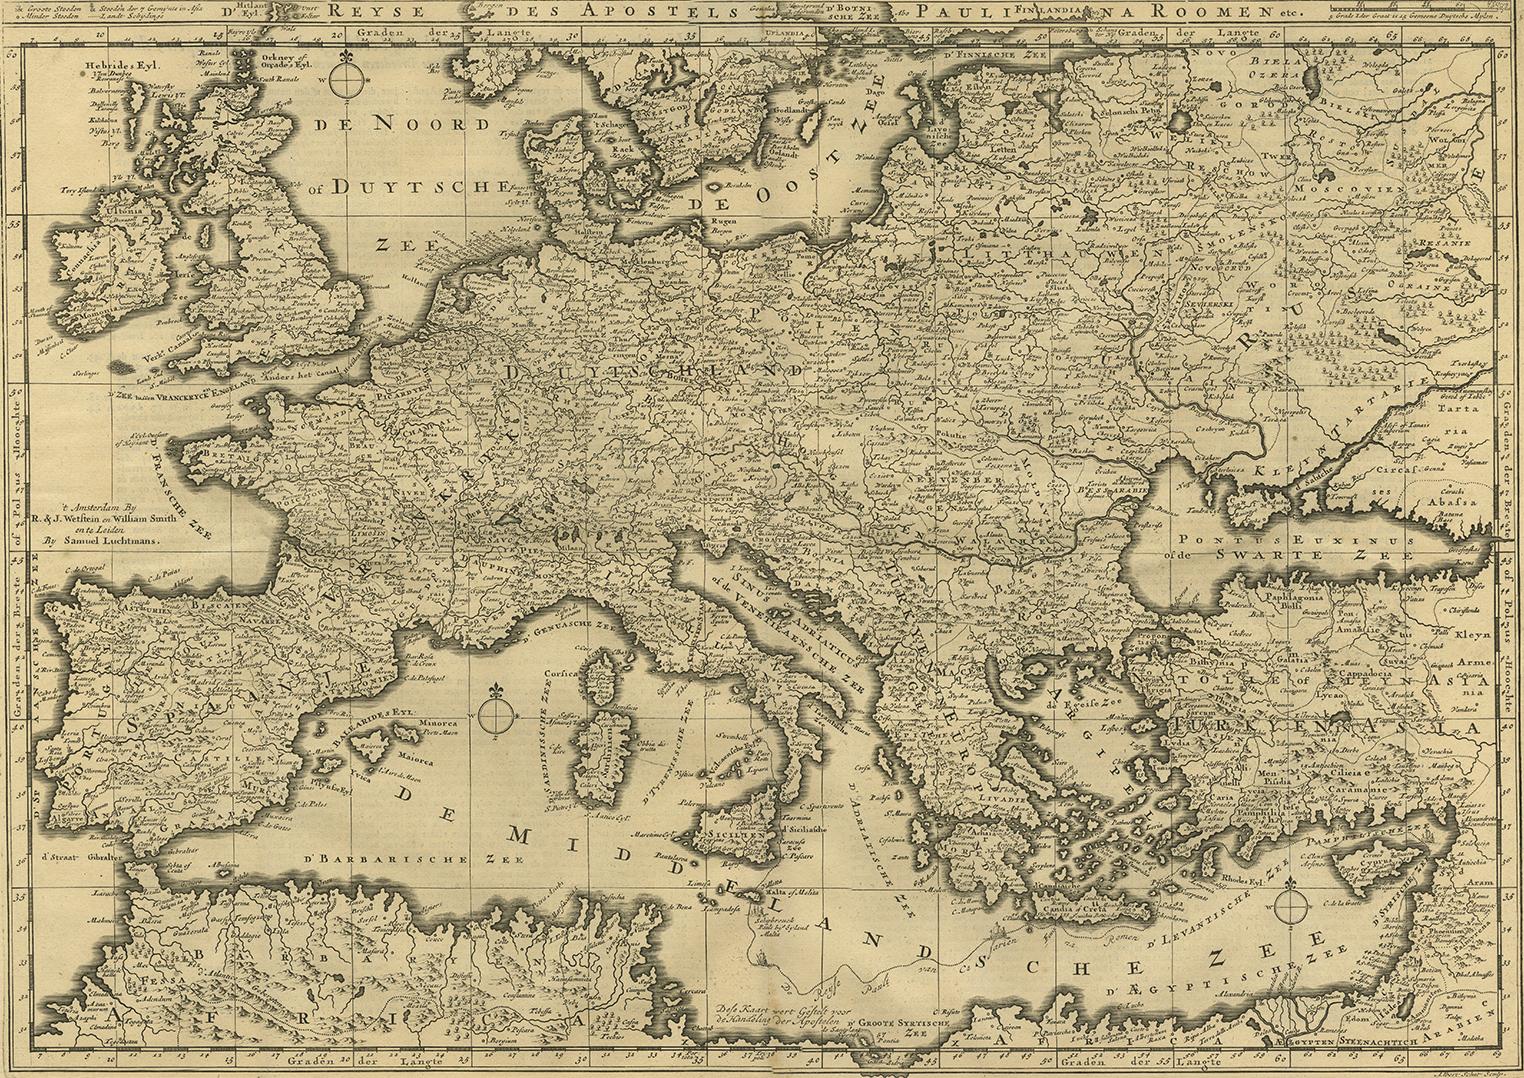 Antike Karte des Mittelmeers und eines großen Teils von Europa, die die Reise des heiligen Paulus nach Rom illustriert. Diese Karte stammt aus 